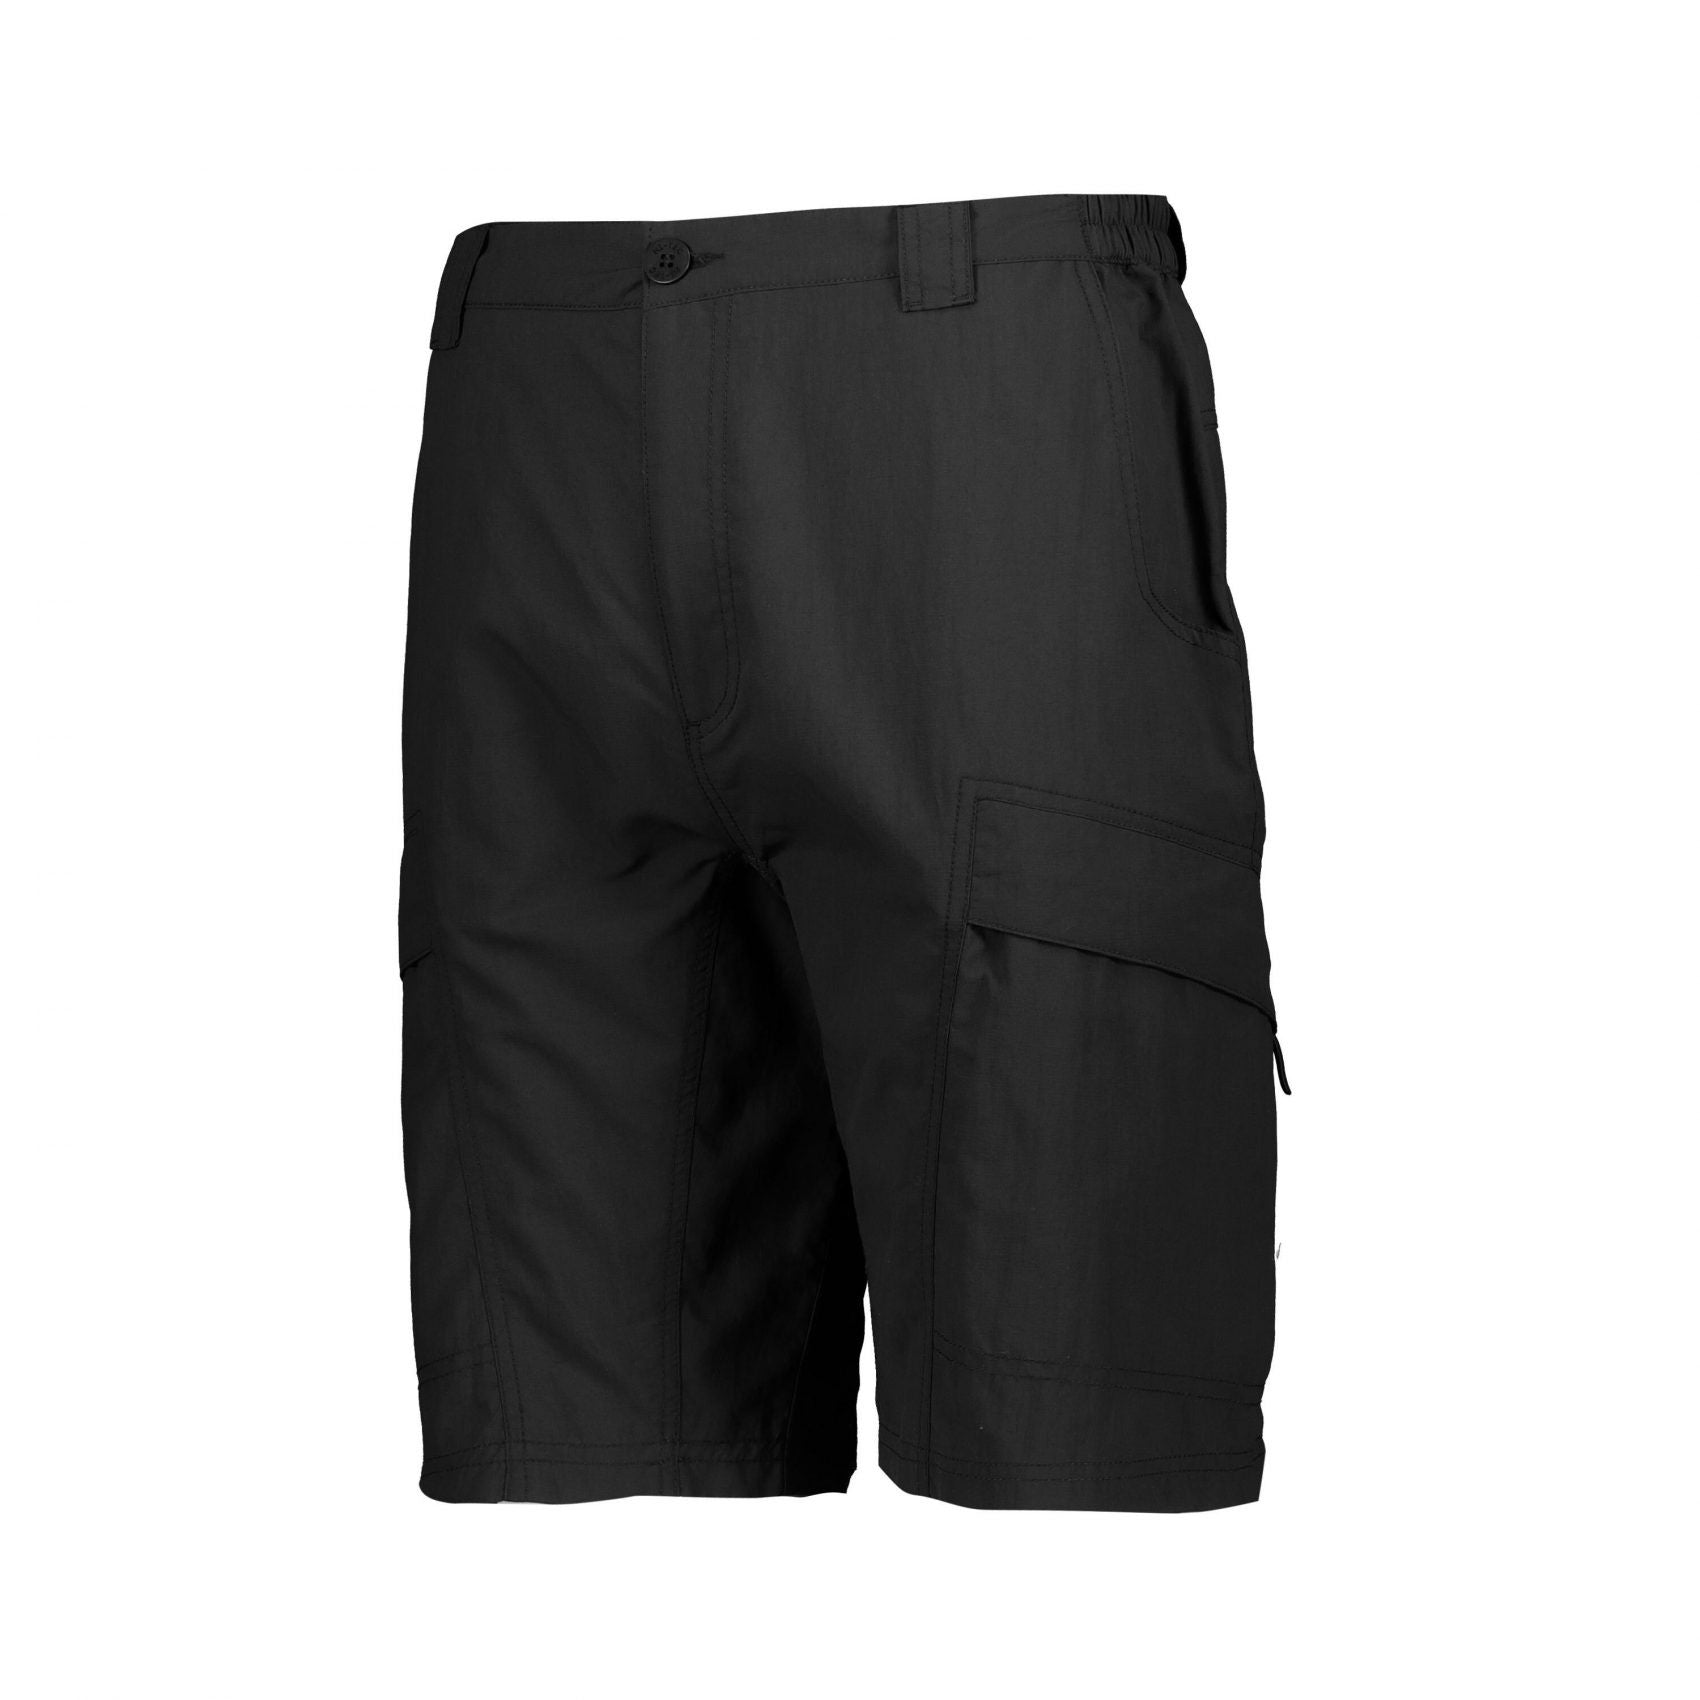 Hi-Tec Tech Hiking Shorts